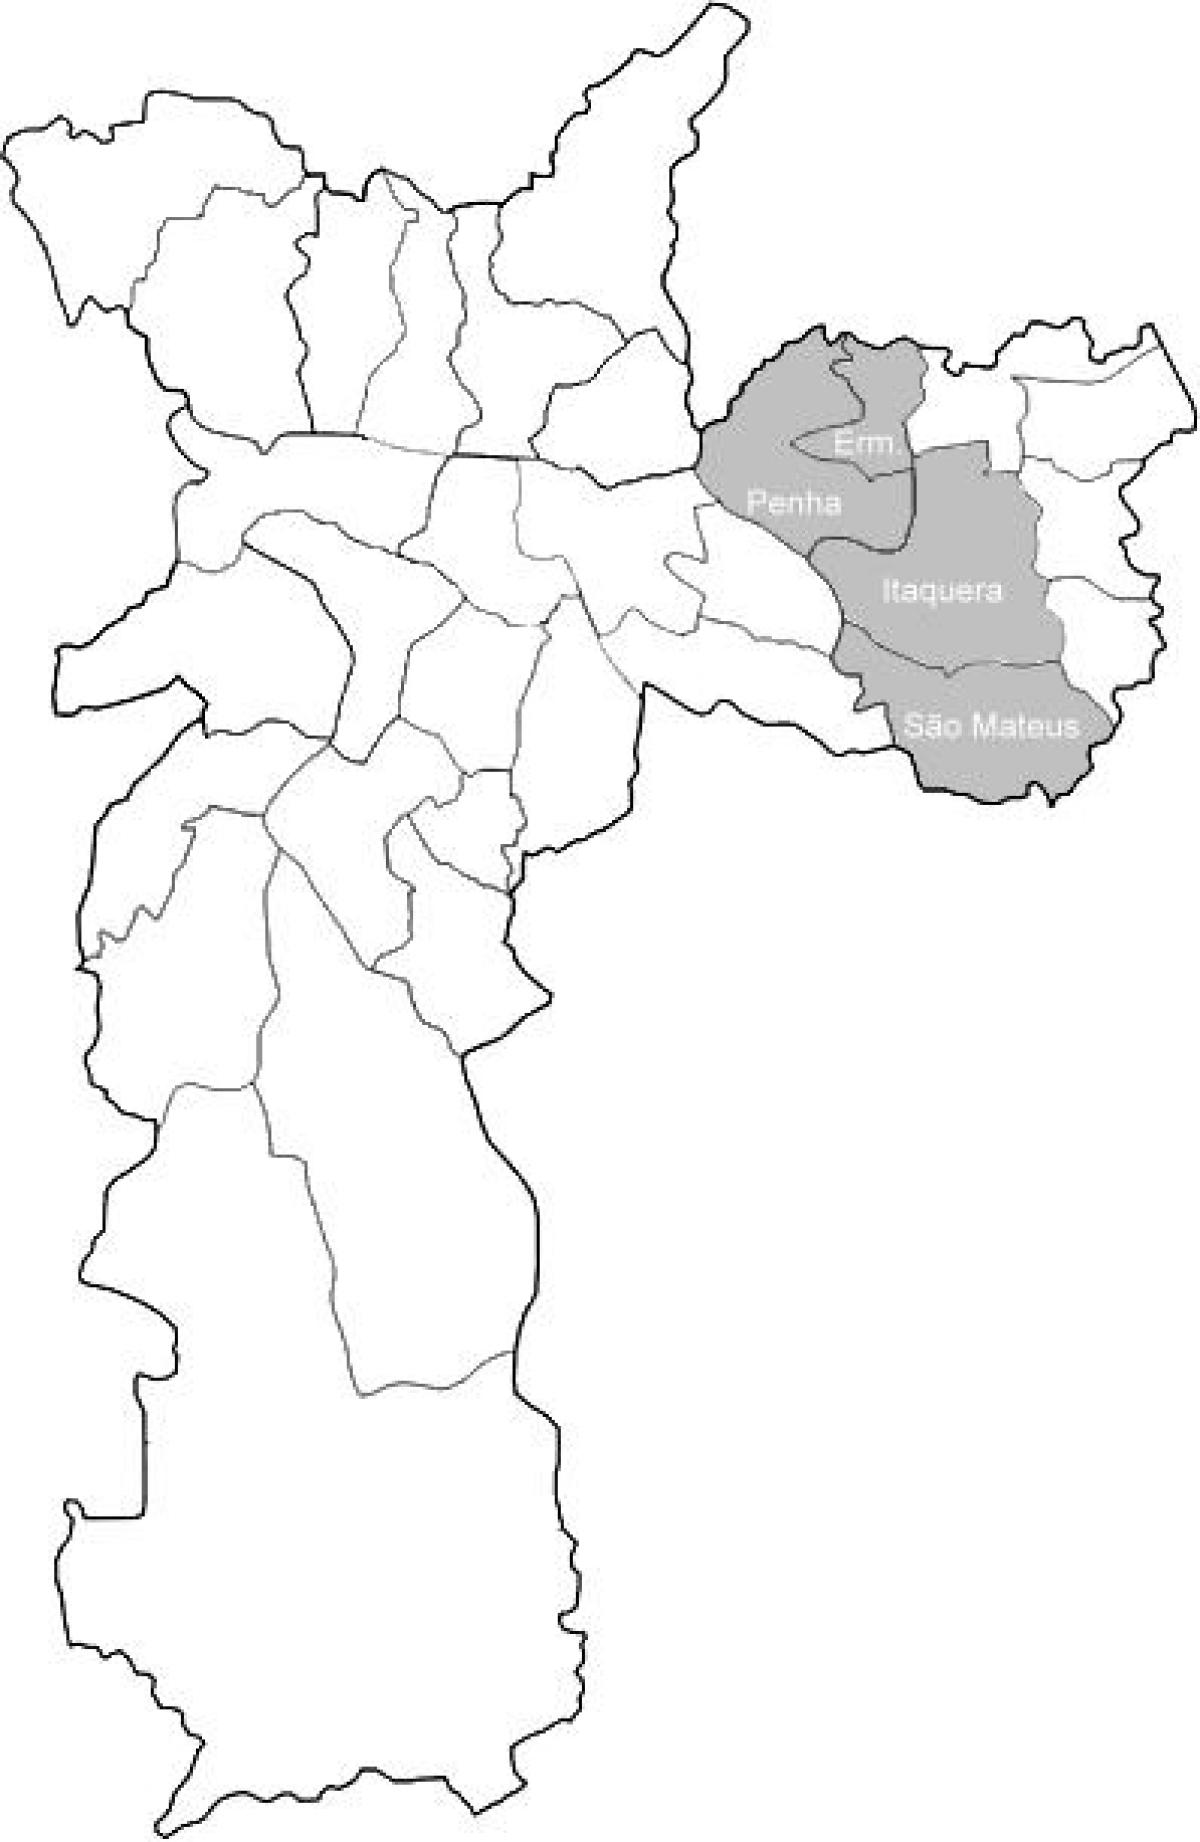 Mapa zóny Leste 1 São Paulo